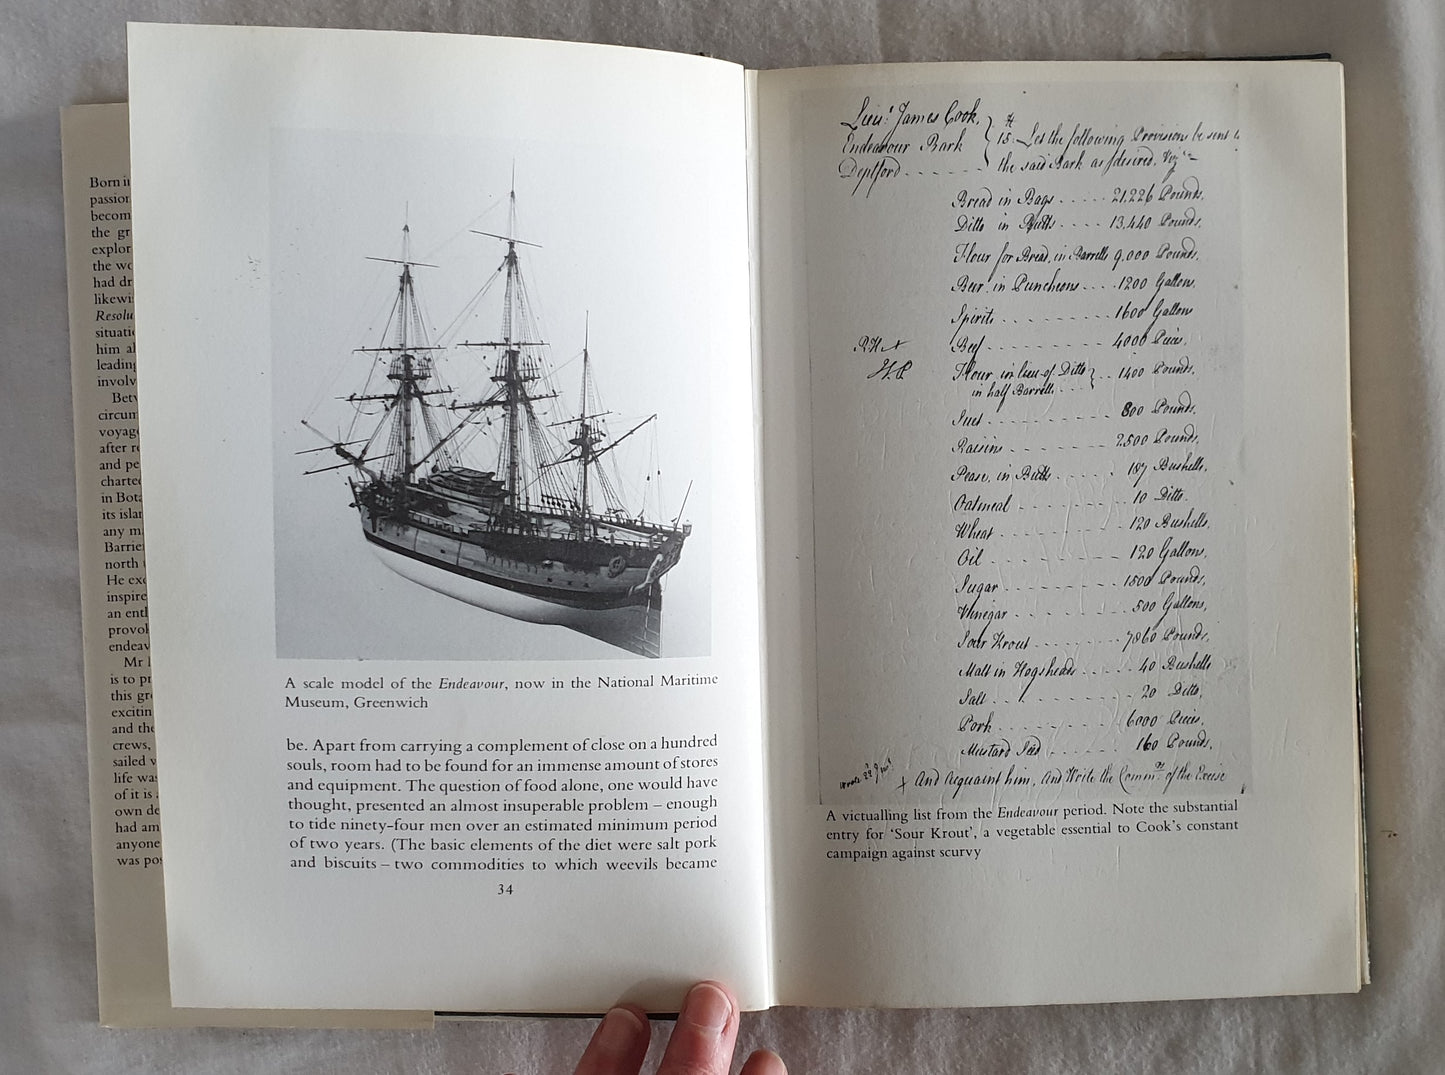 Captain Cook by Alistair Maclean